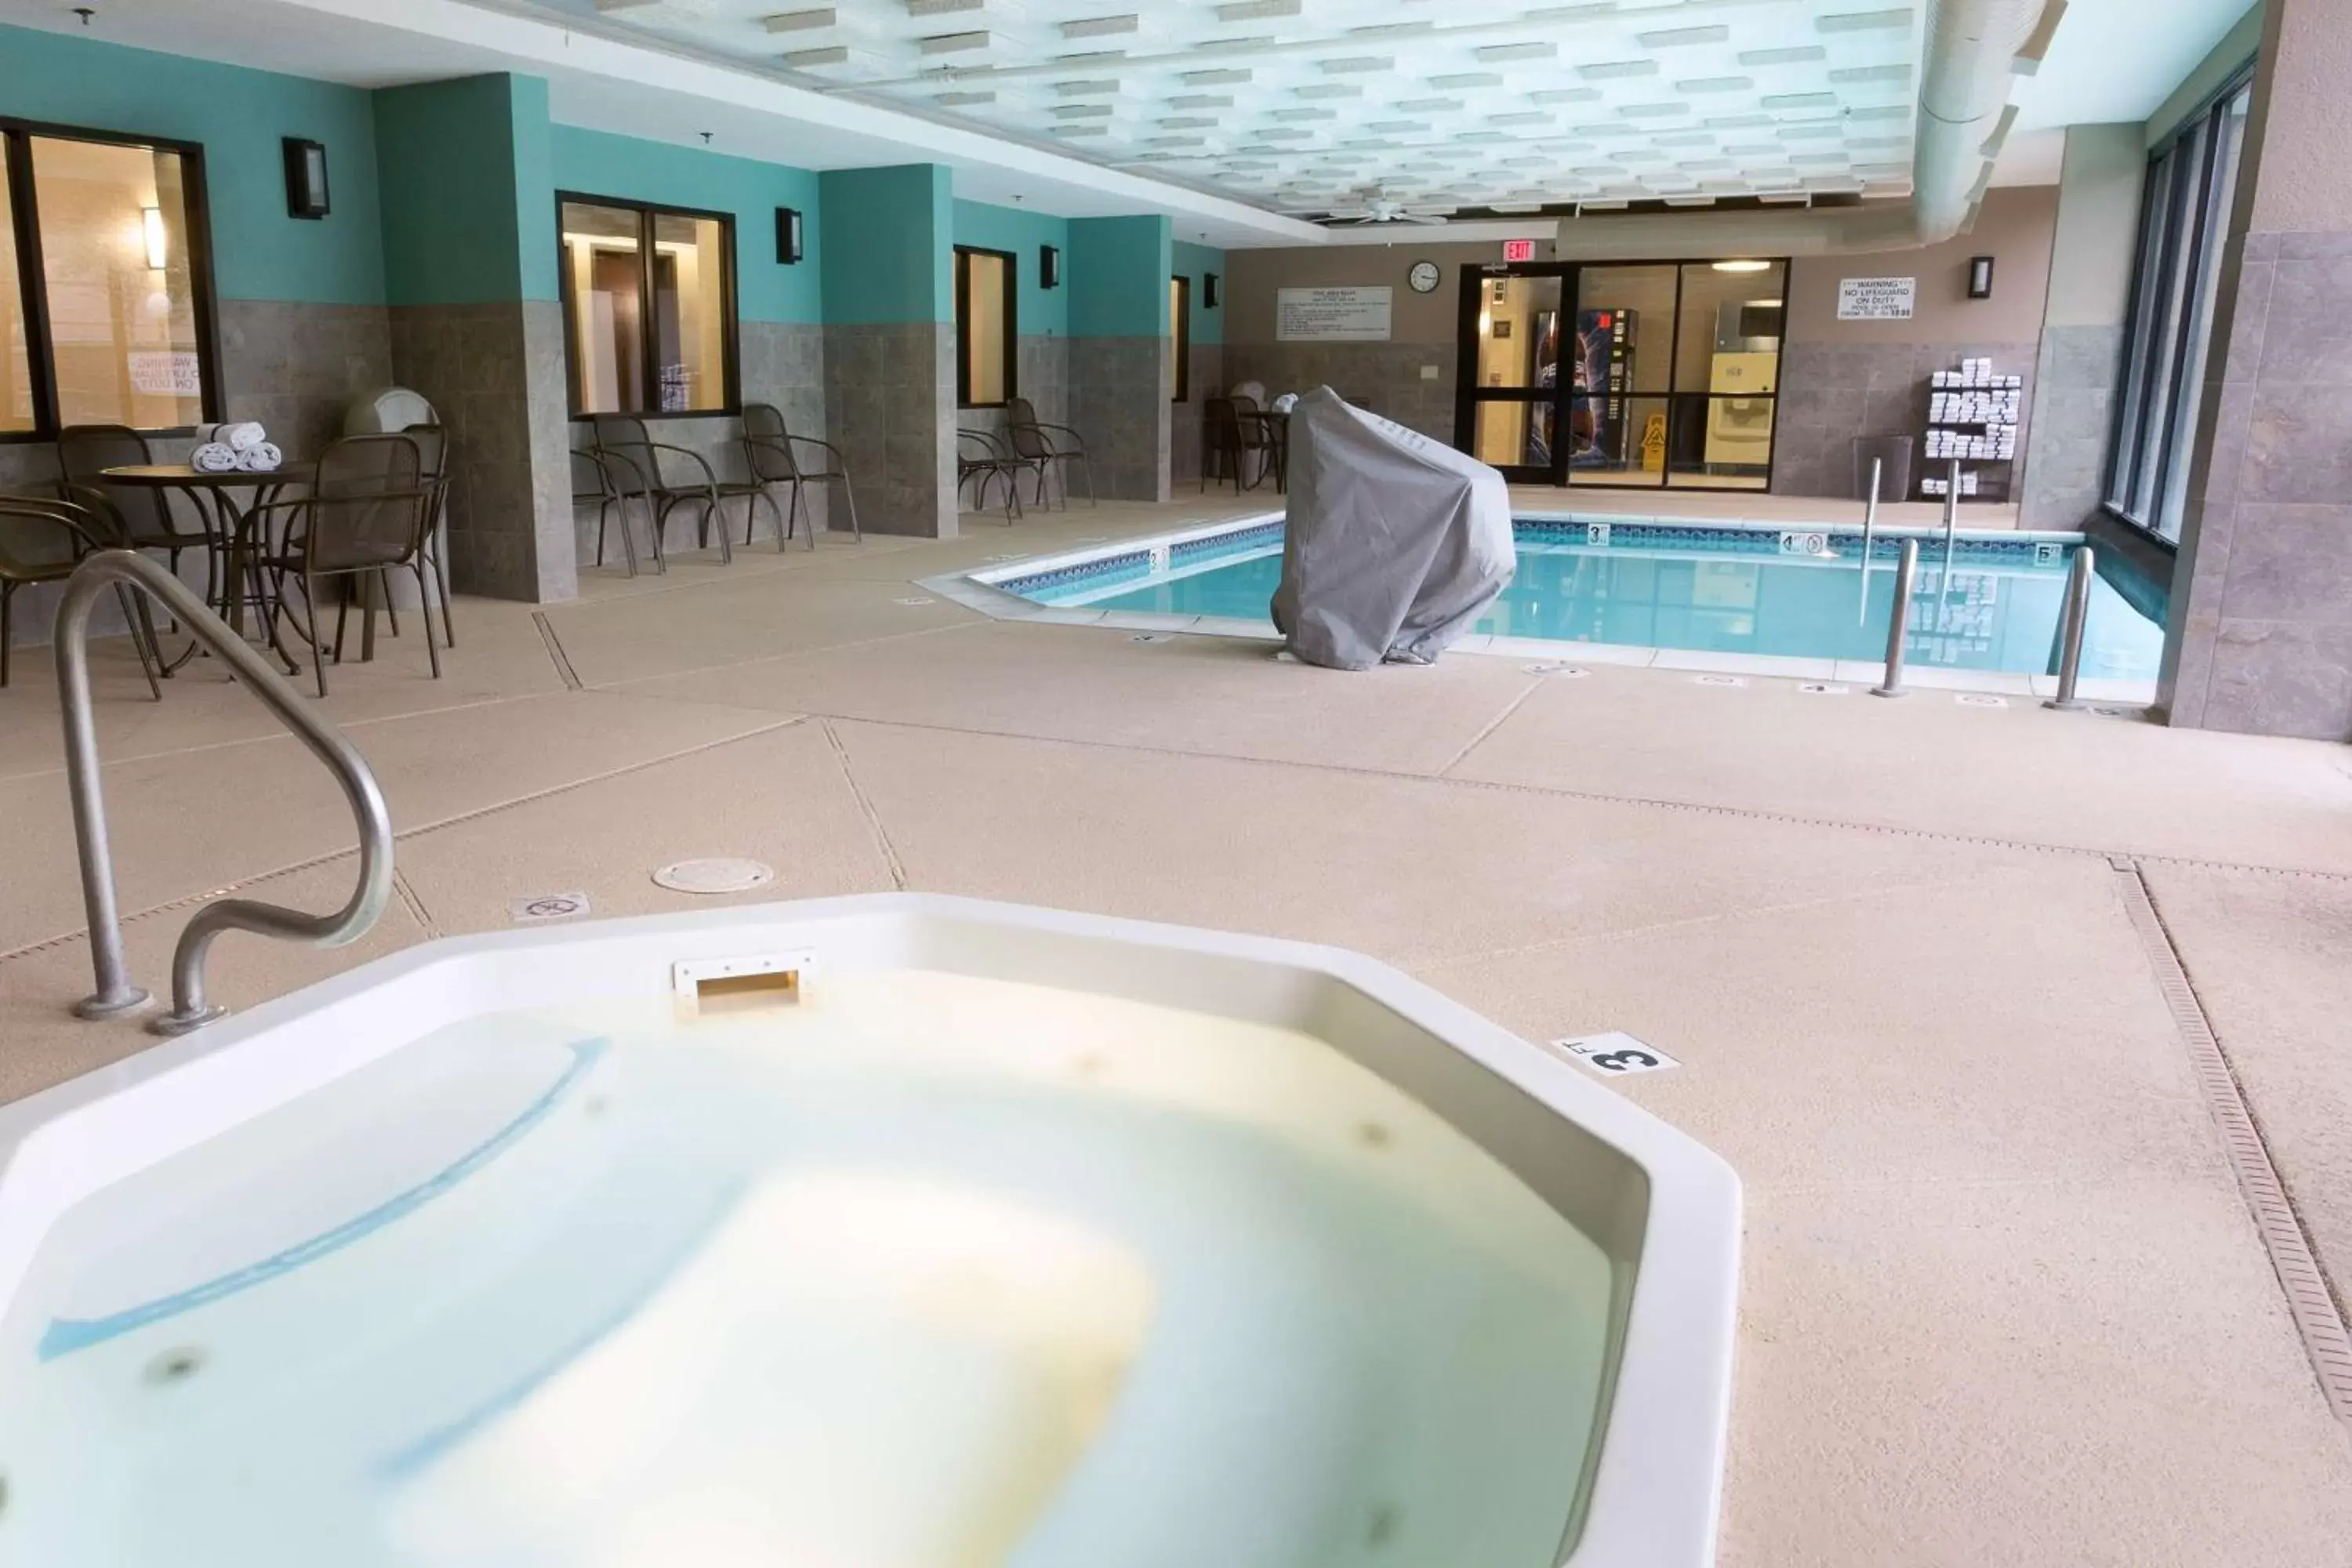 Activities, Swimming Pool in Drury Inn & Suites Houston Sugar Land